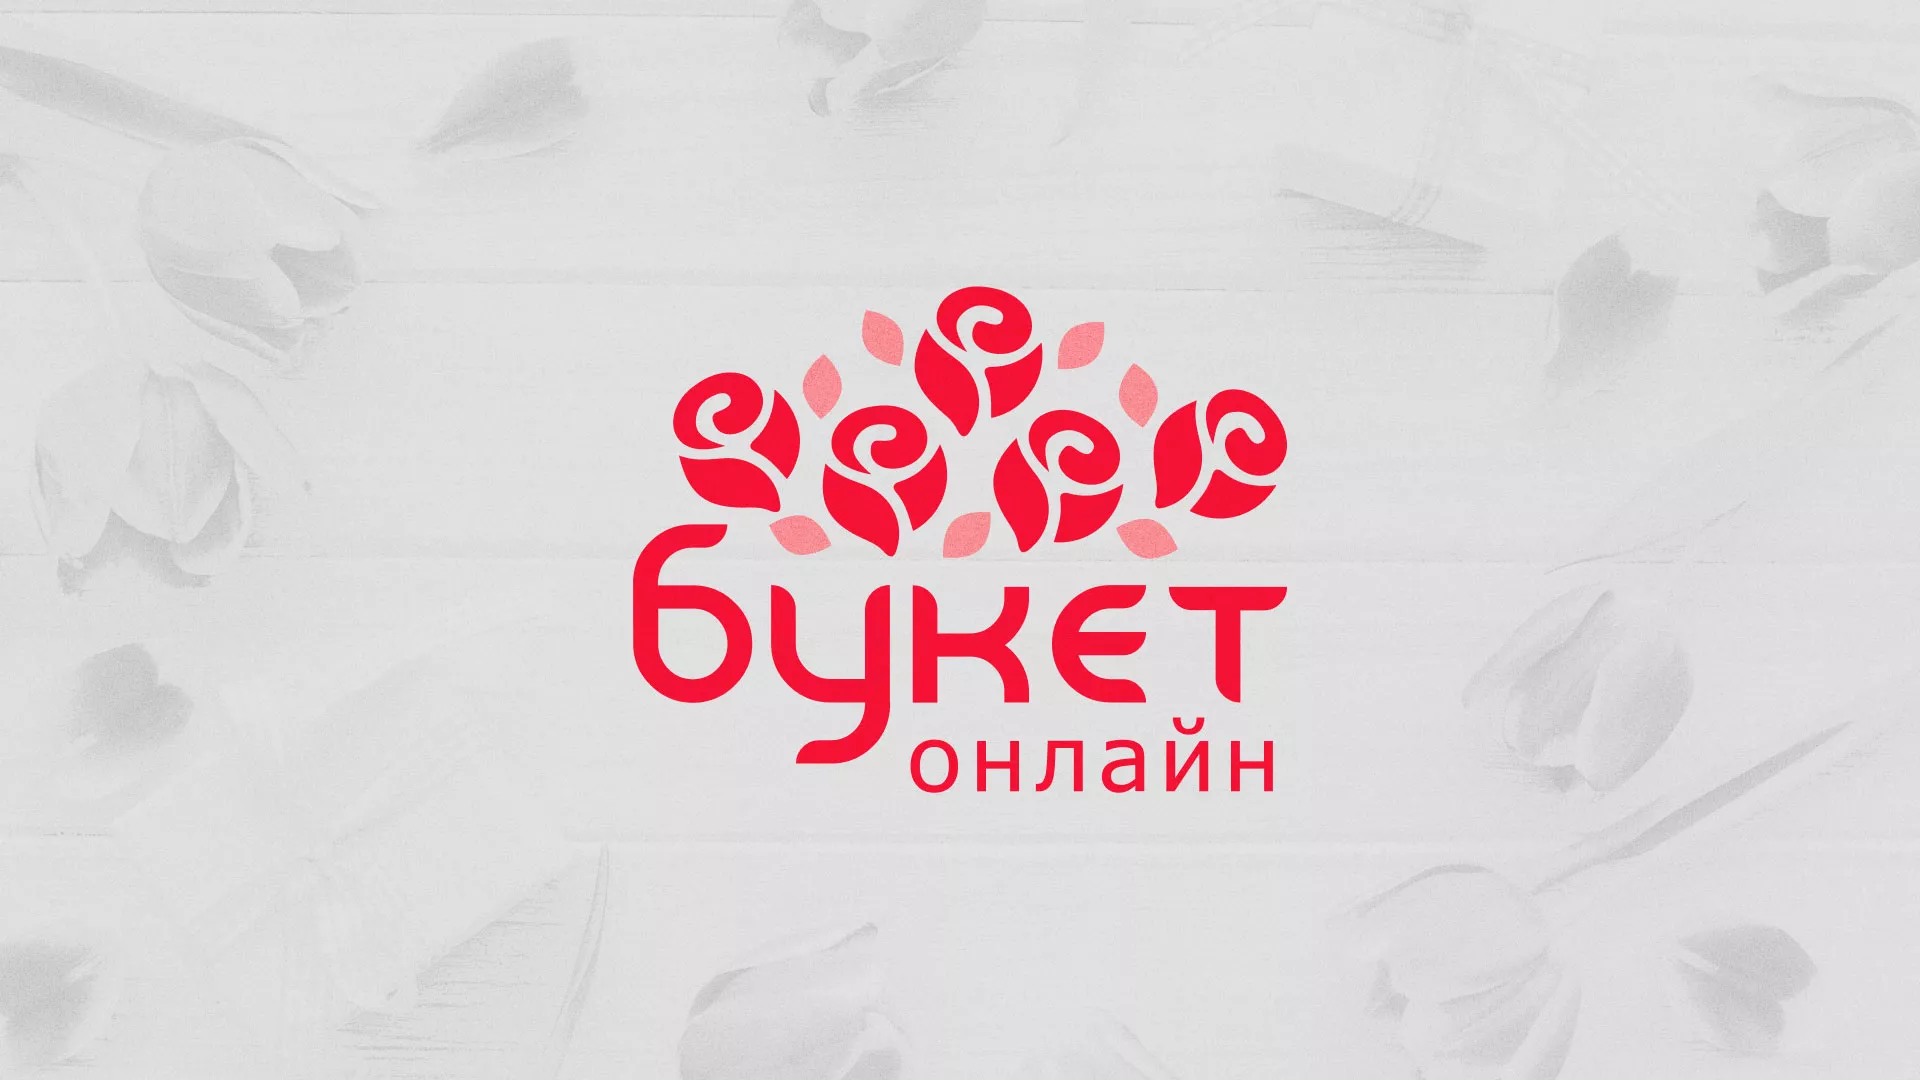 Создание интернет-магазина «Букет-онлайн» по цветам в Усть-Илимске